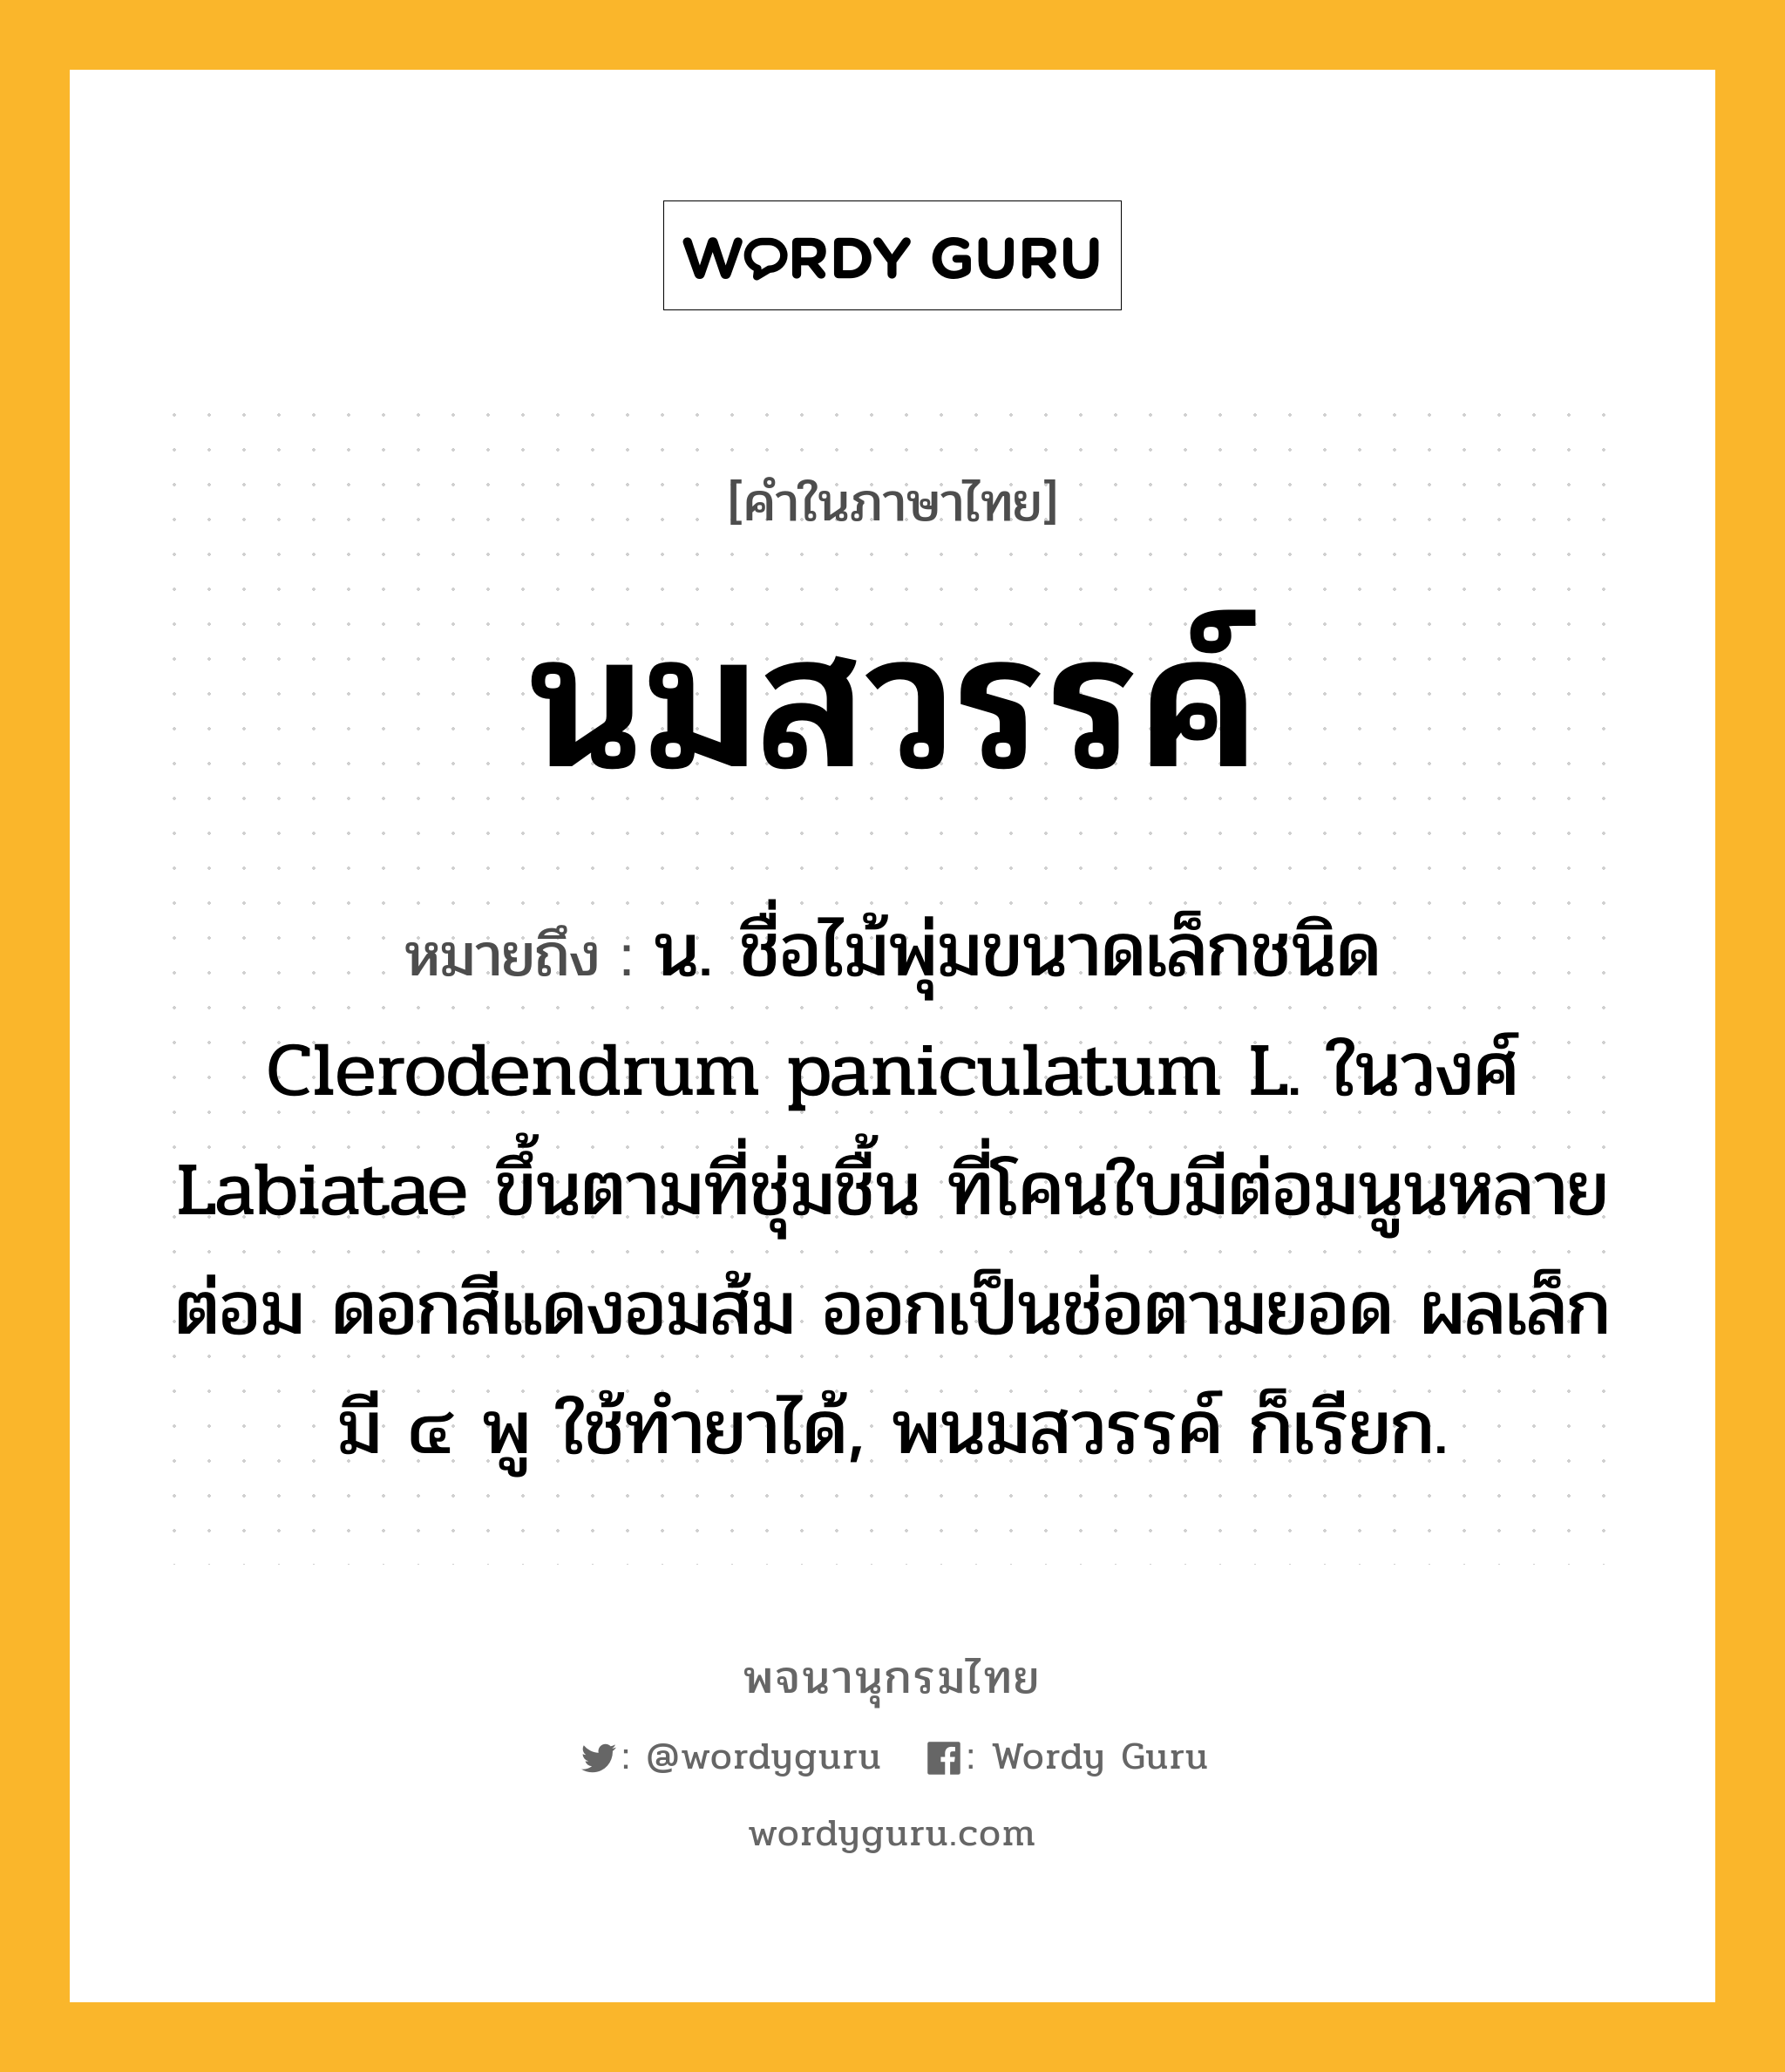 นมสวรรค์ ความหมาย หมายถึงอะไร?, คำในภาษาไทย นมสวรรค์ หมายถึง น. ชื่อไม้พุ่มขนาดเล็กชนิด Clerodendrum paniculatum L. ในวงศ์ Labiatae ขึ้นตามที่ชุ่มชื้น ที่โคนใบมีต่อมนูนหลายต่อม ดอกสีแดงอมส้ม ออกเป็นช่อตามยอด ผลเล็ก มี ๔ พู ใช้ทํายาได้, พนมสวรรค์ ก็เรียก.